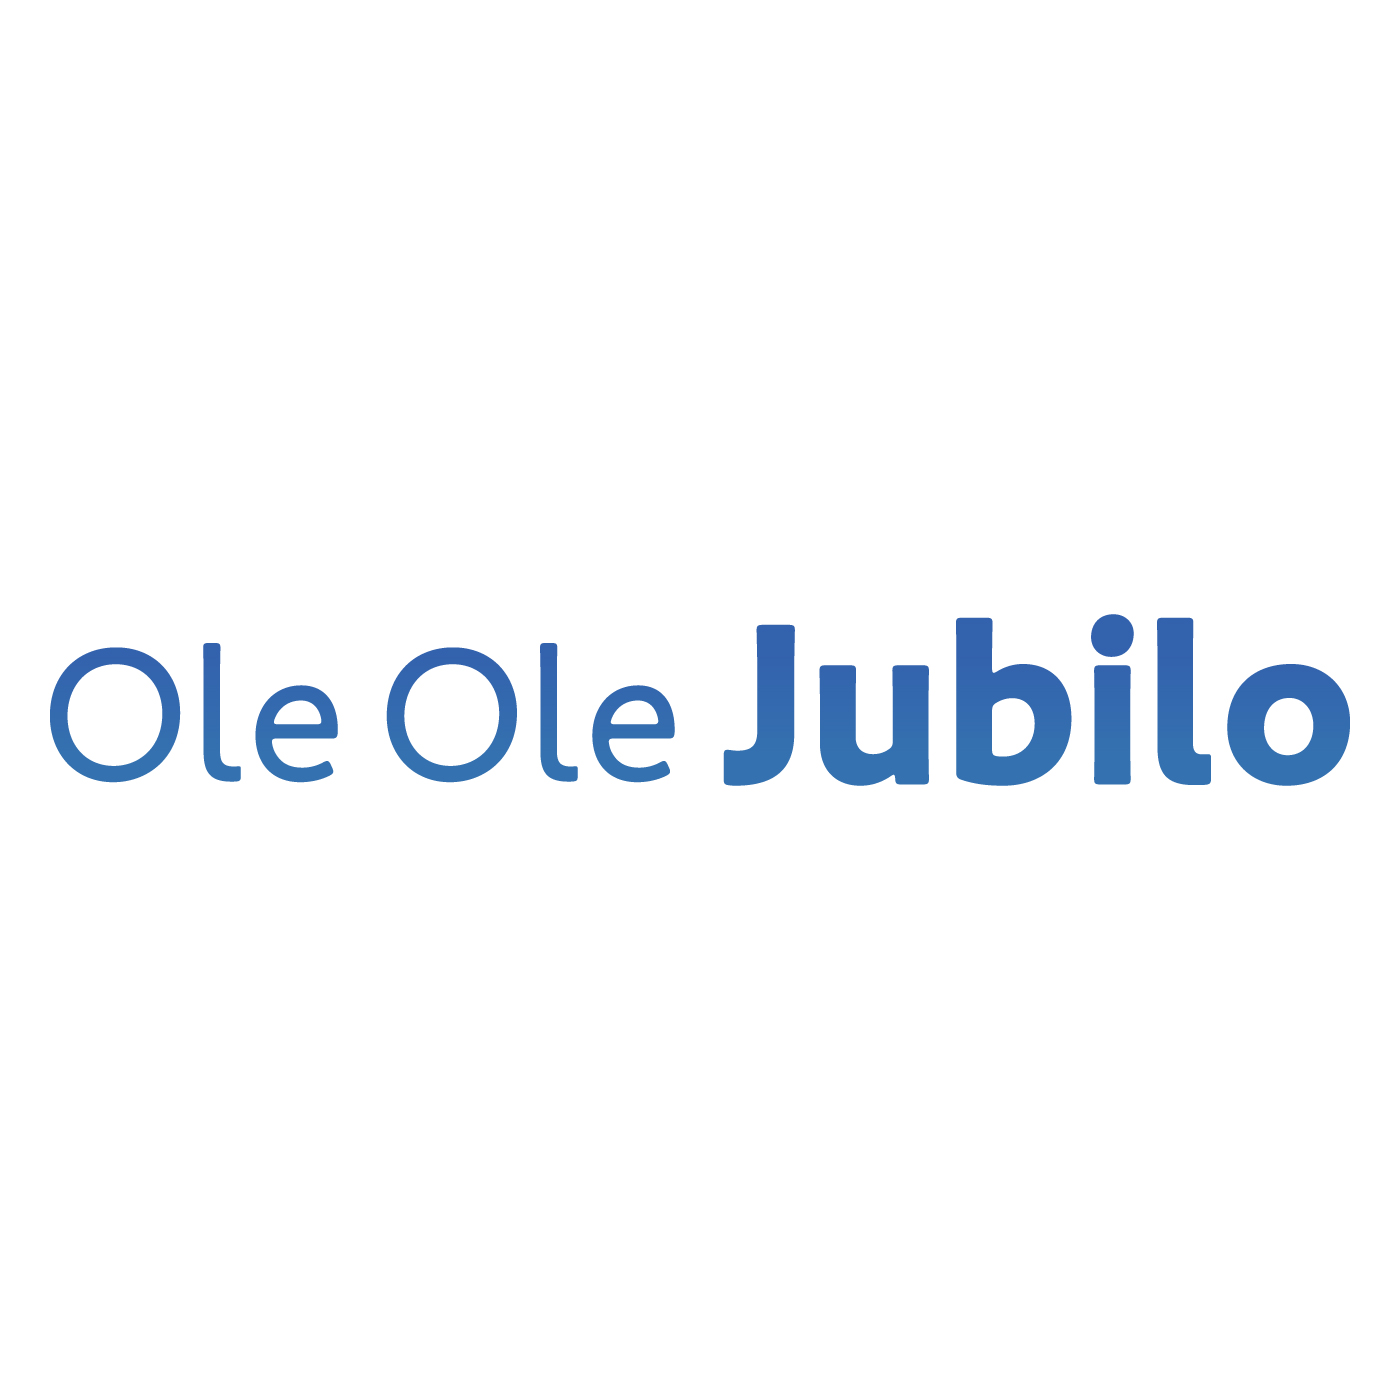 Ole Ole Jubilo